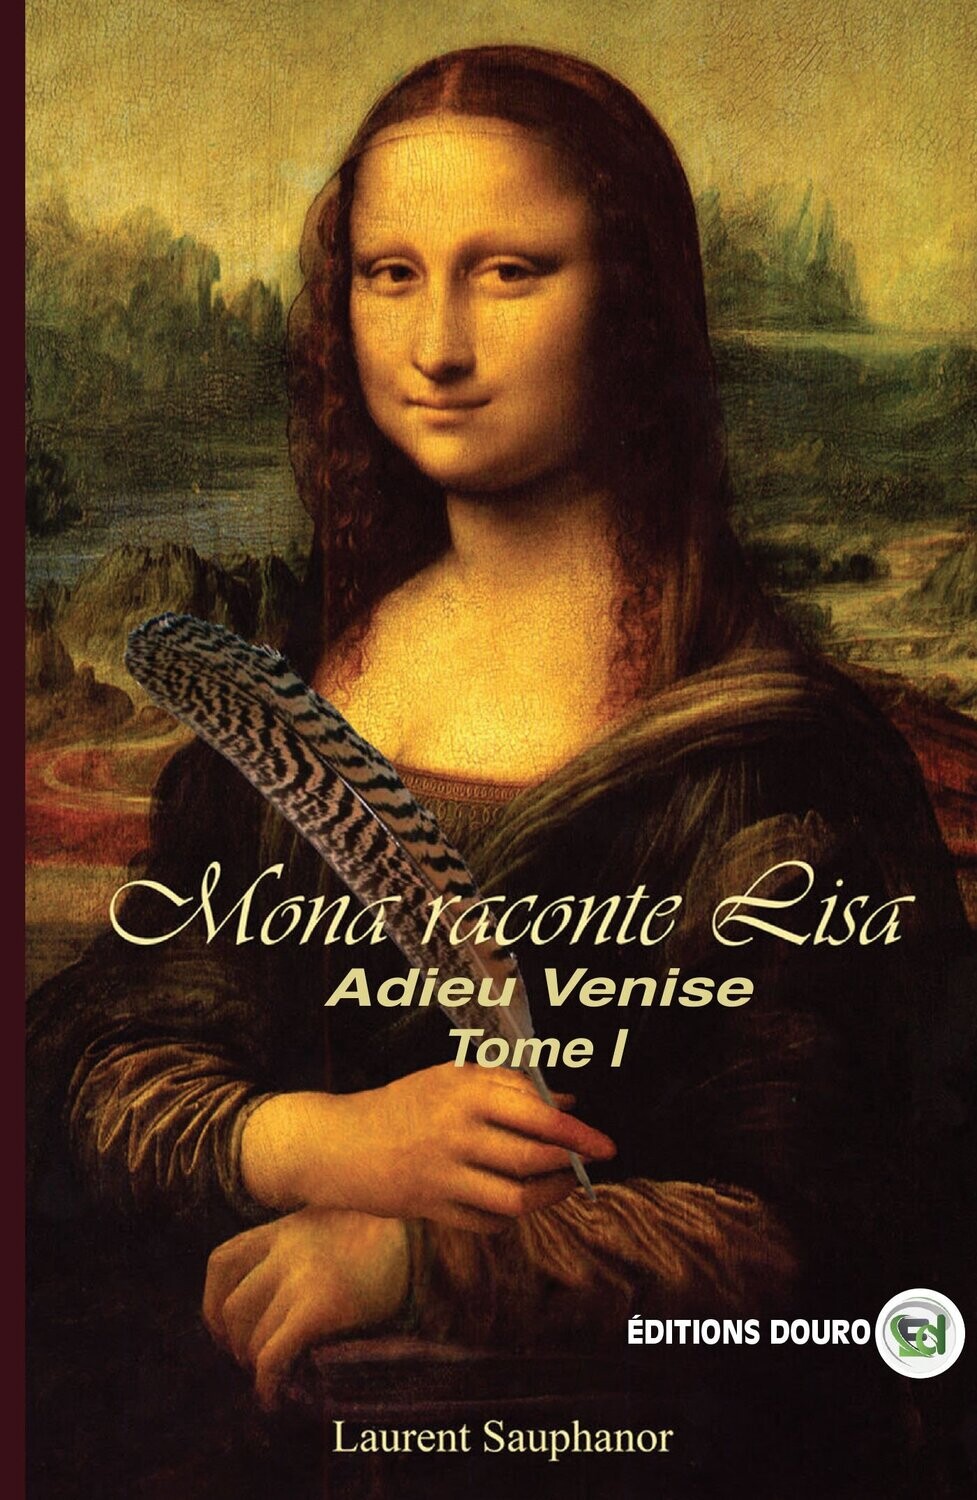 Mona raconte Lisa - Adieu Venise